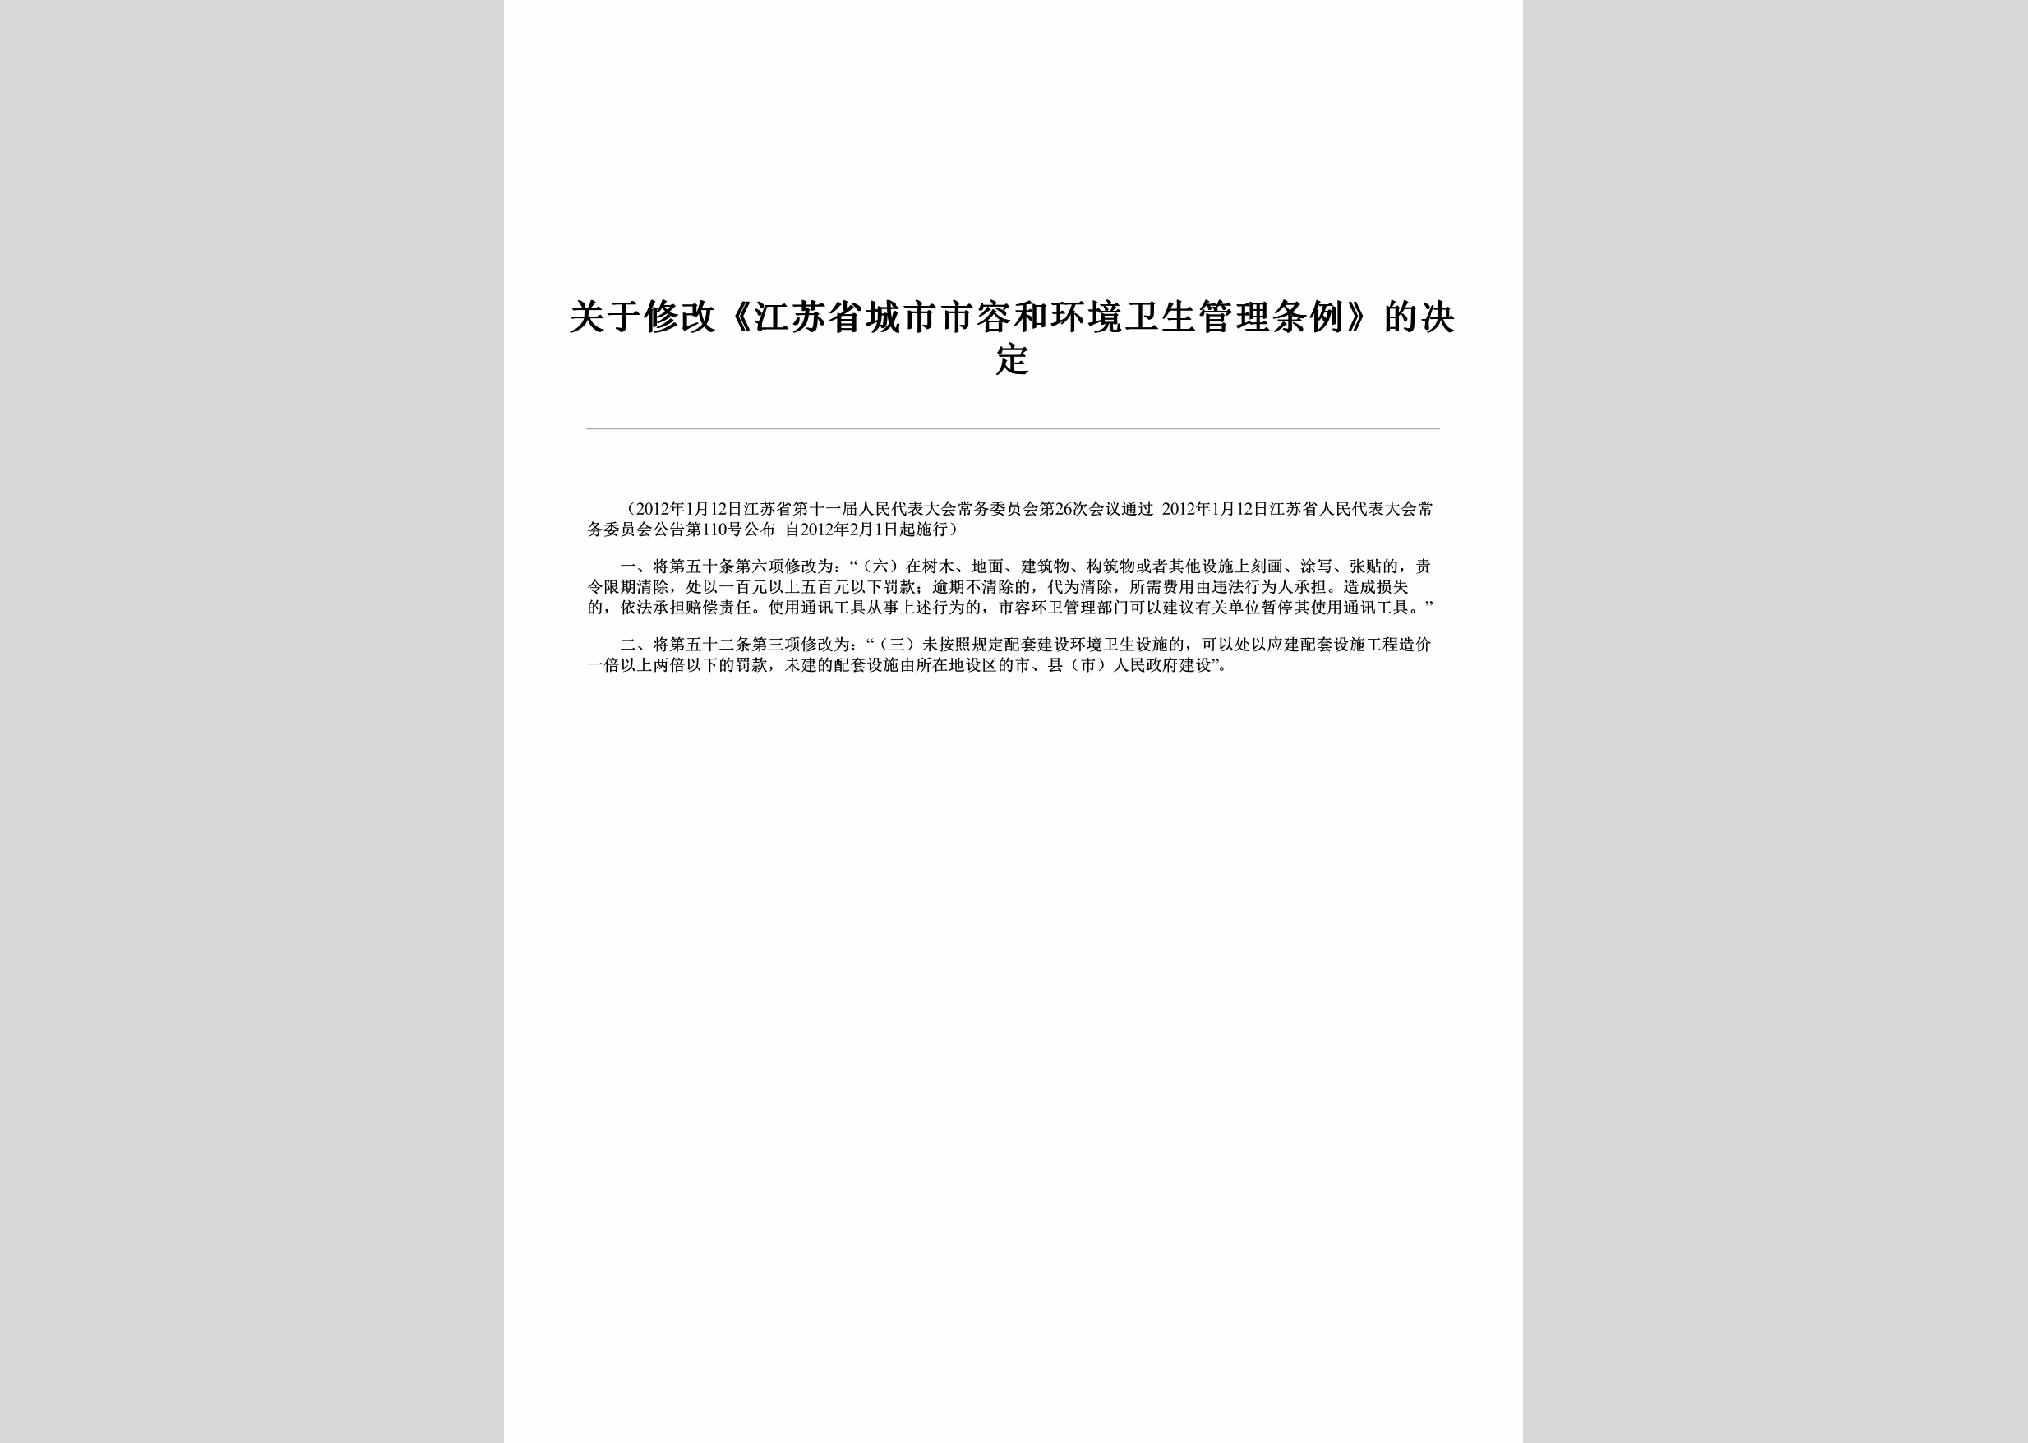 JS-SRHJGLTL-2012：关于修改《江苏省城市市容和环境卫生管理条例》的决定